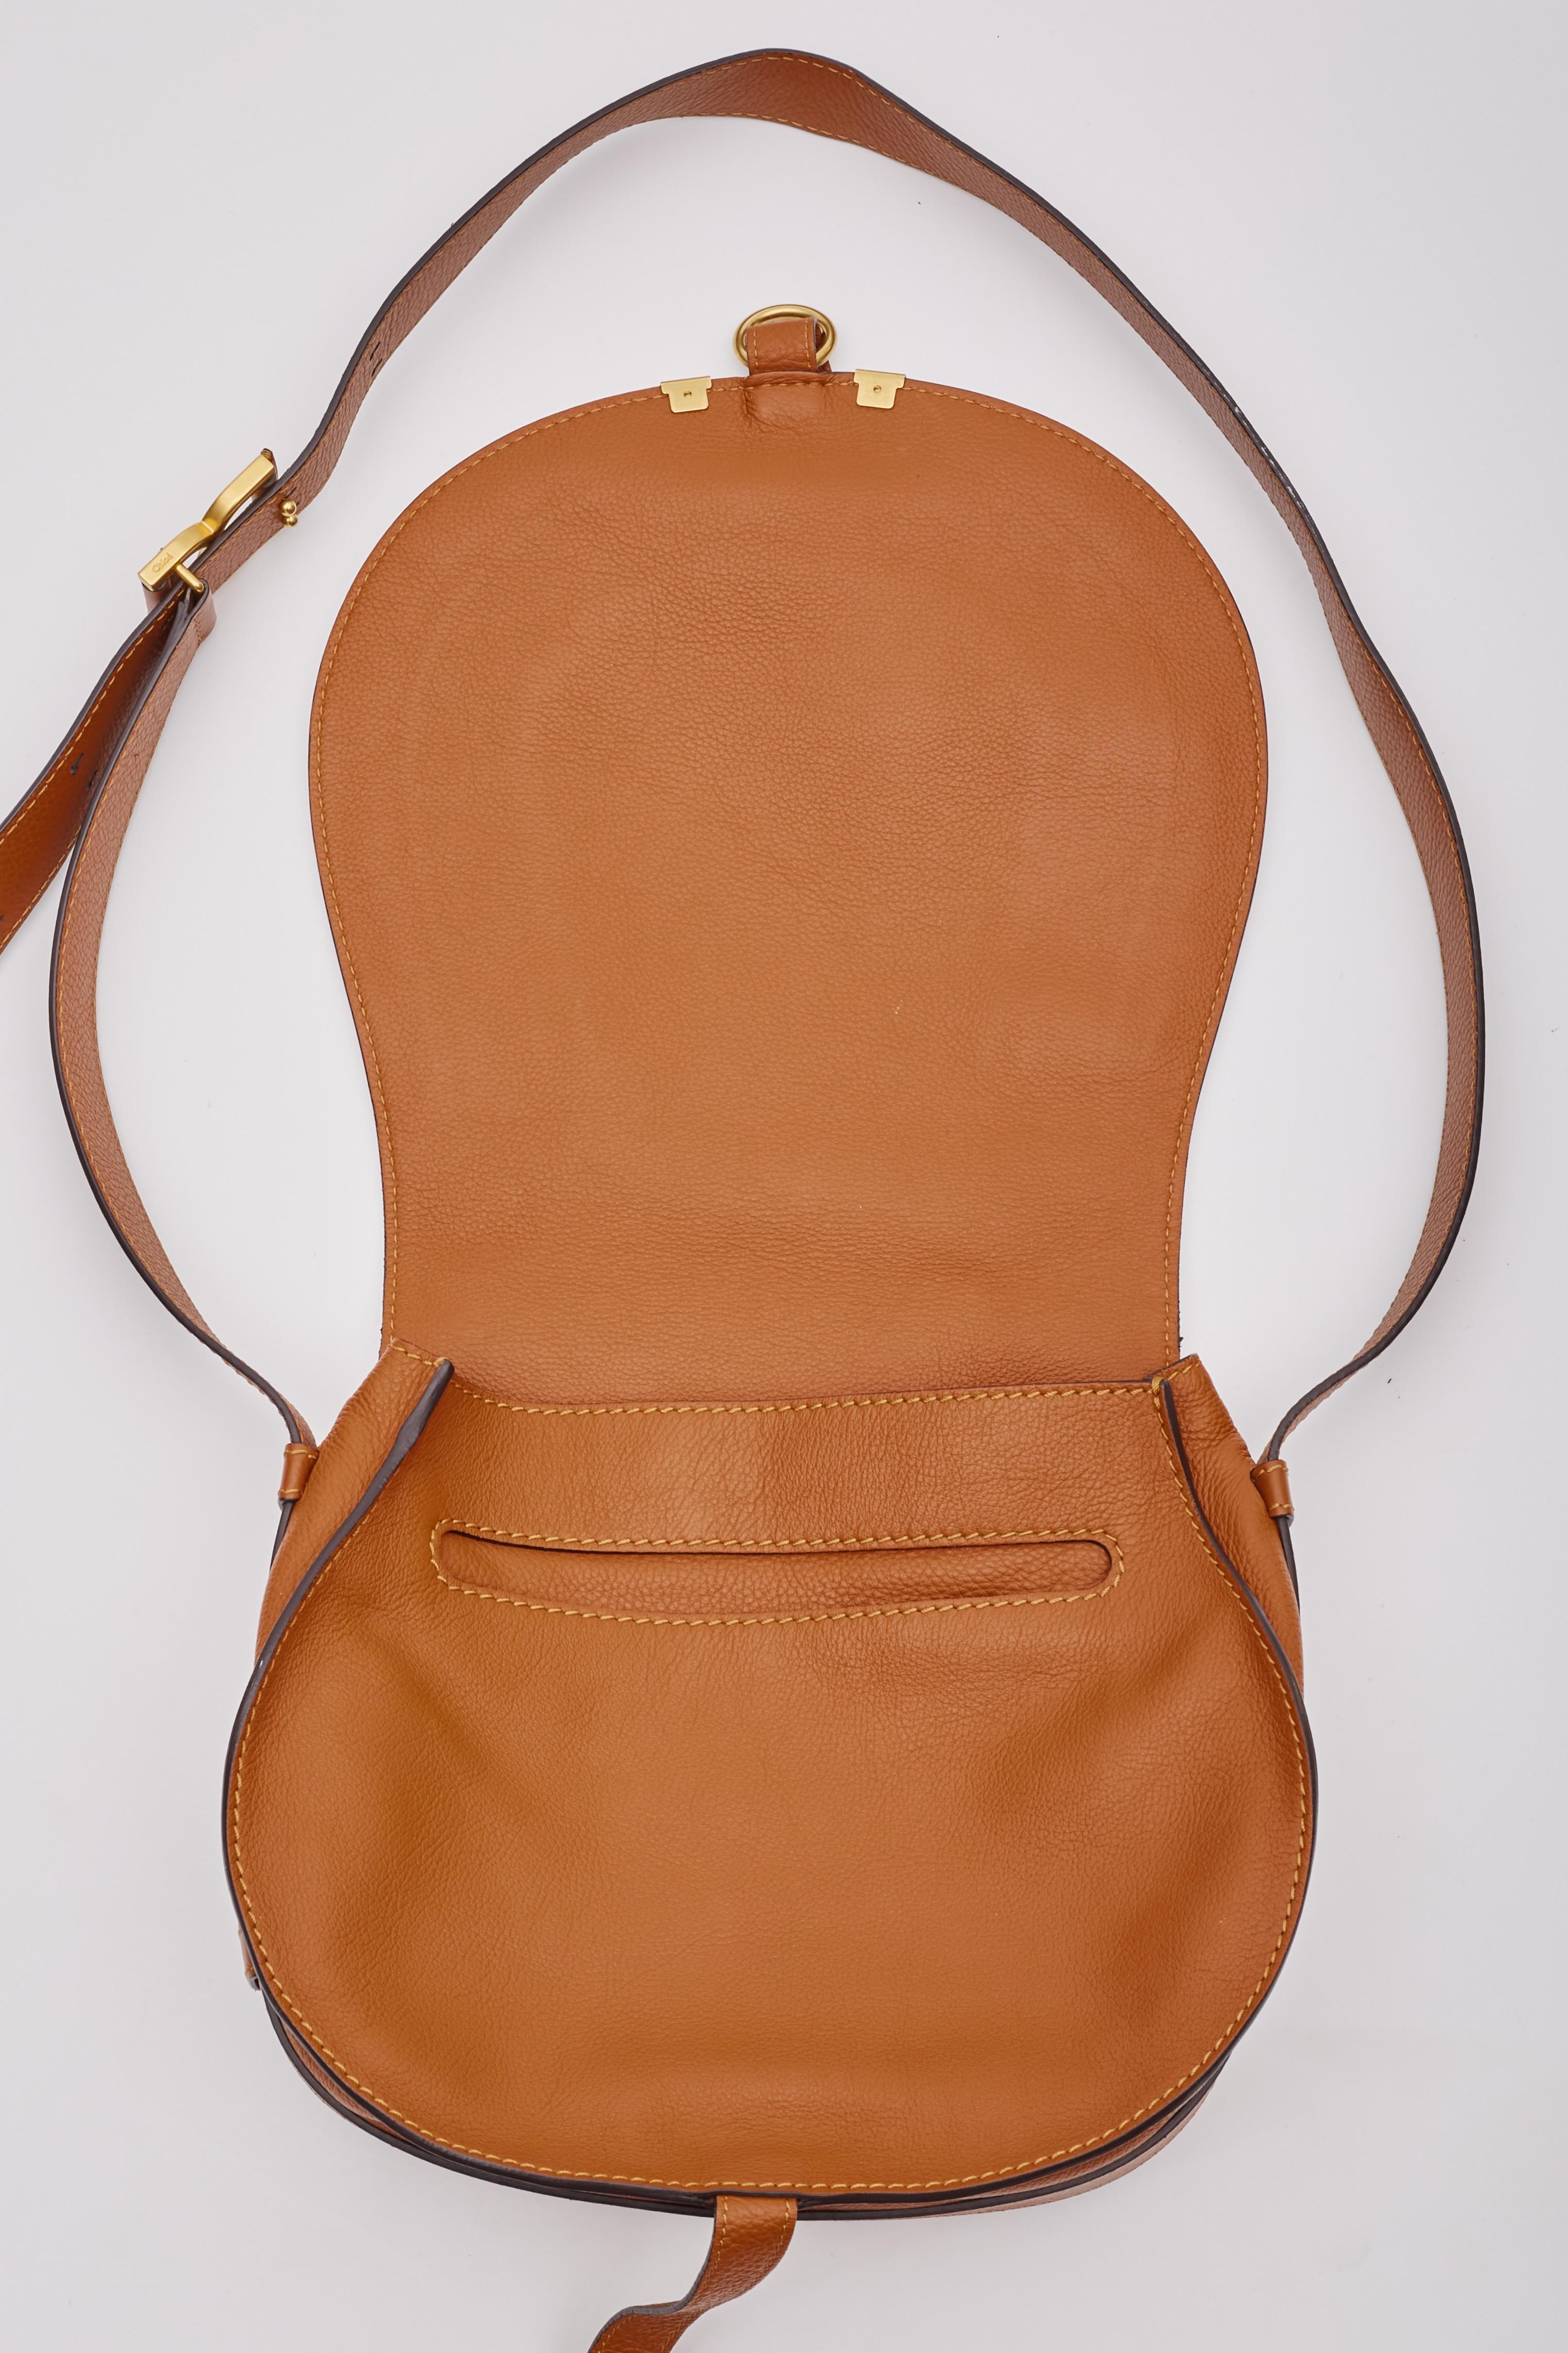 Chloe Caramel Leather Marcie Crossbody Bag Medium For Sale 3